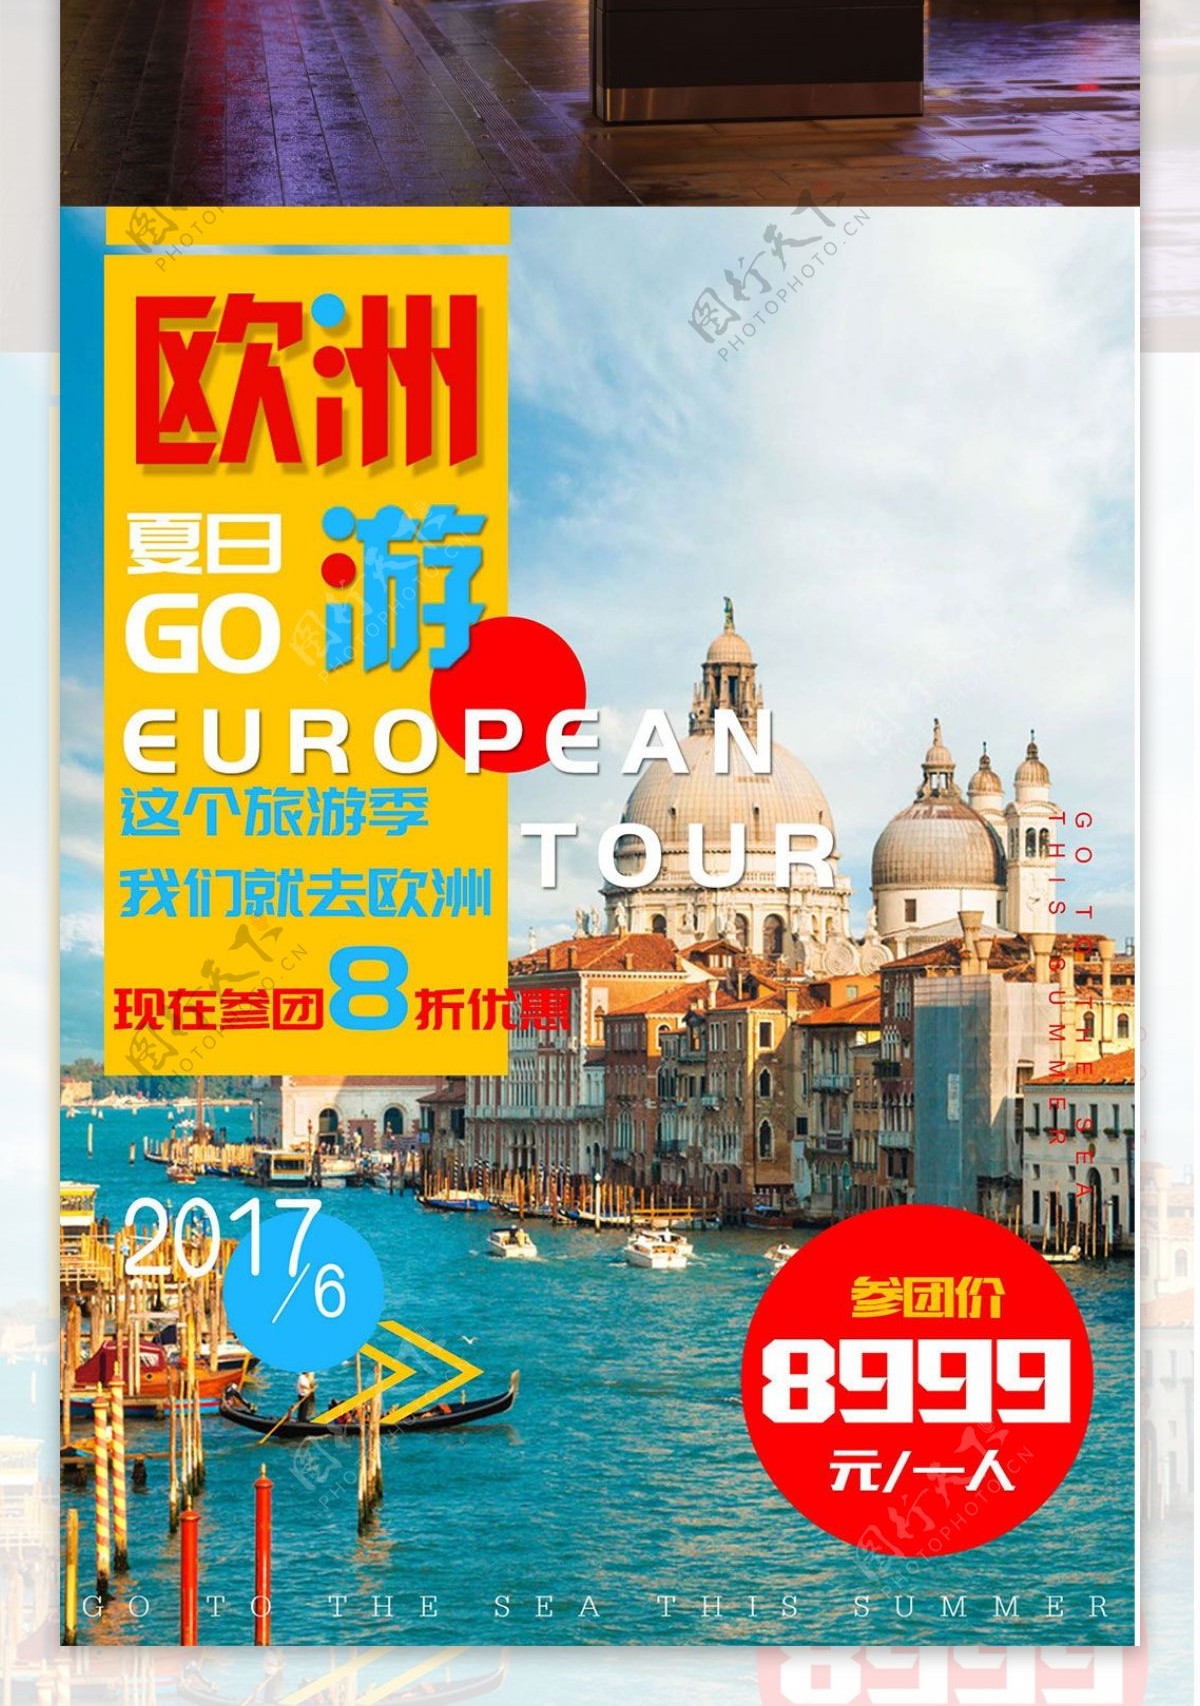 欧洲旅游简约黄蓝简约建筑商业海报设计模板